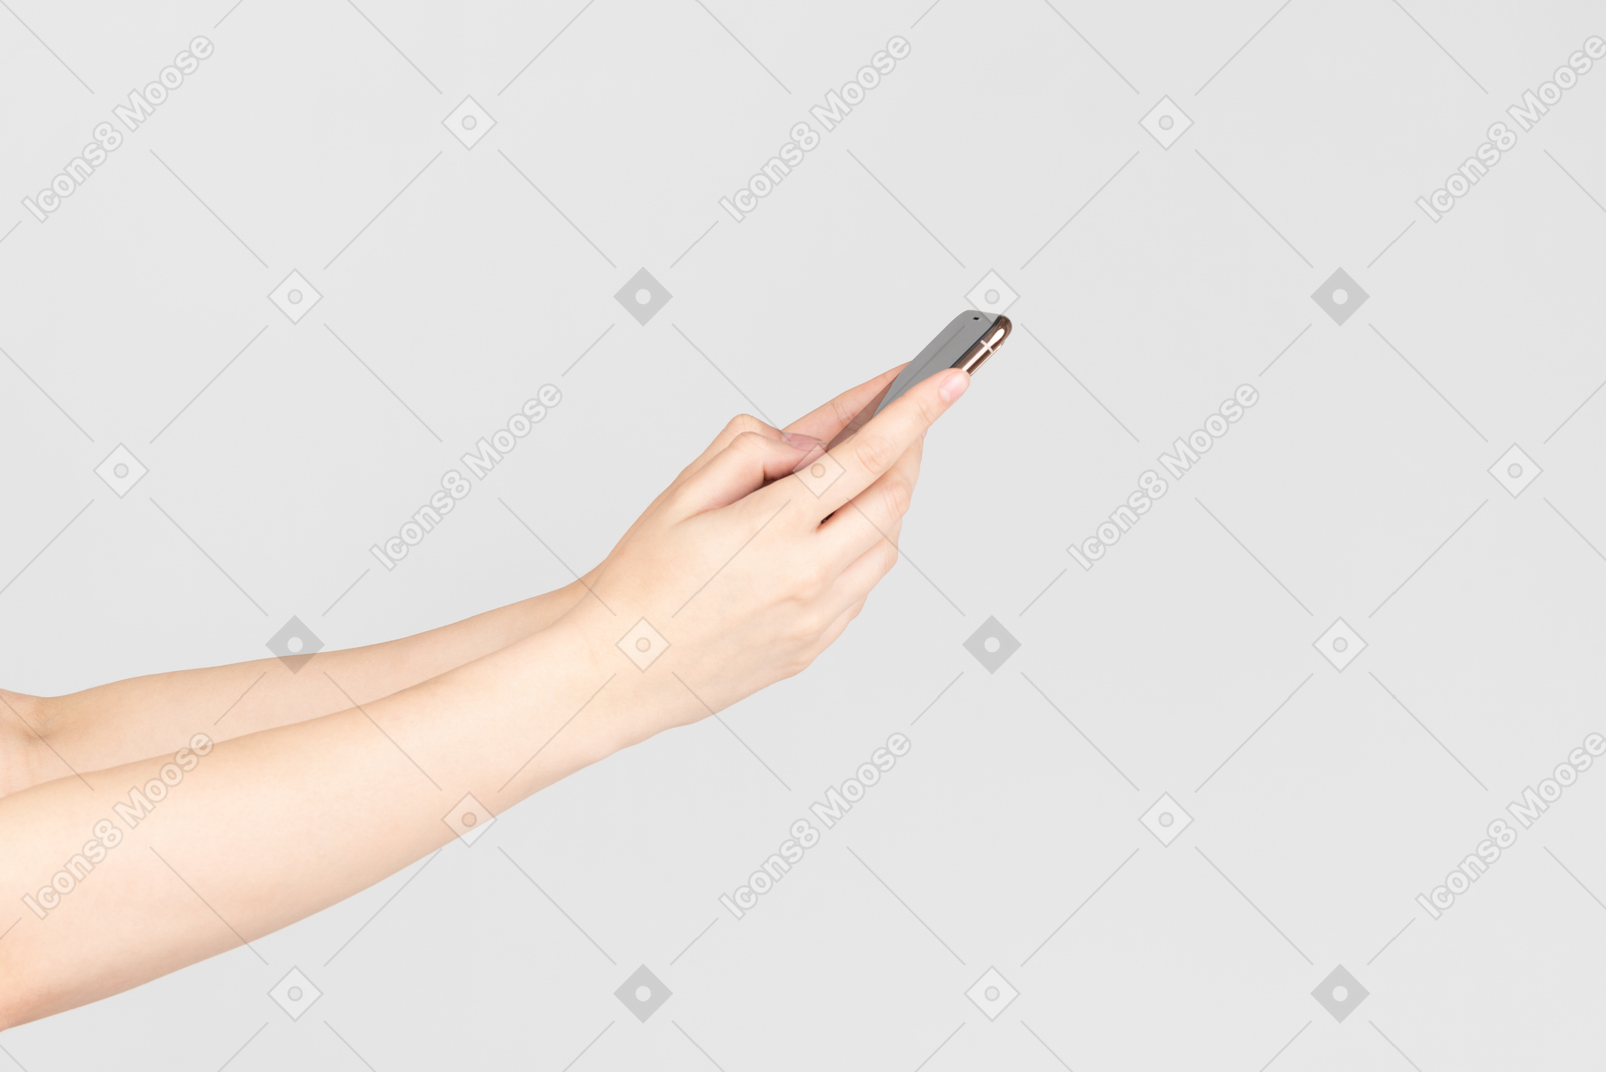 Женские руки держат смартфон